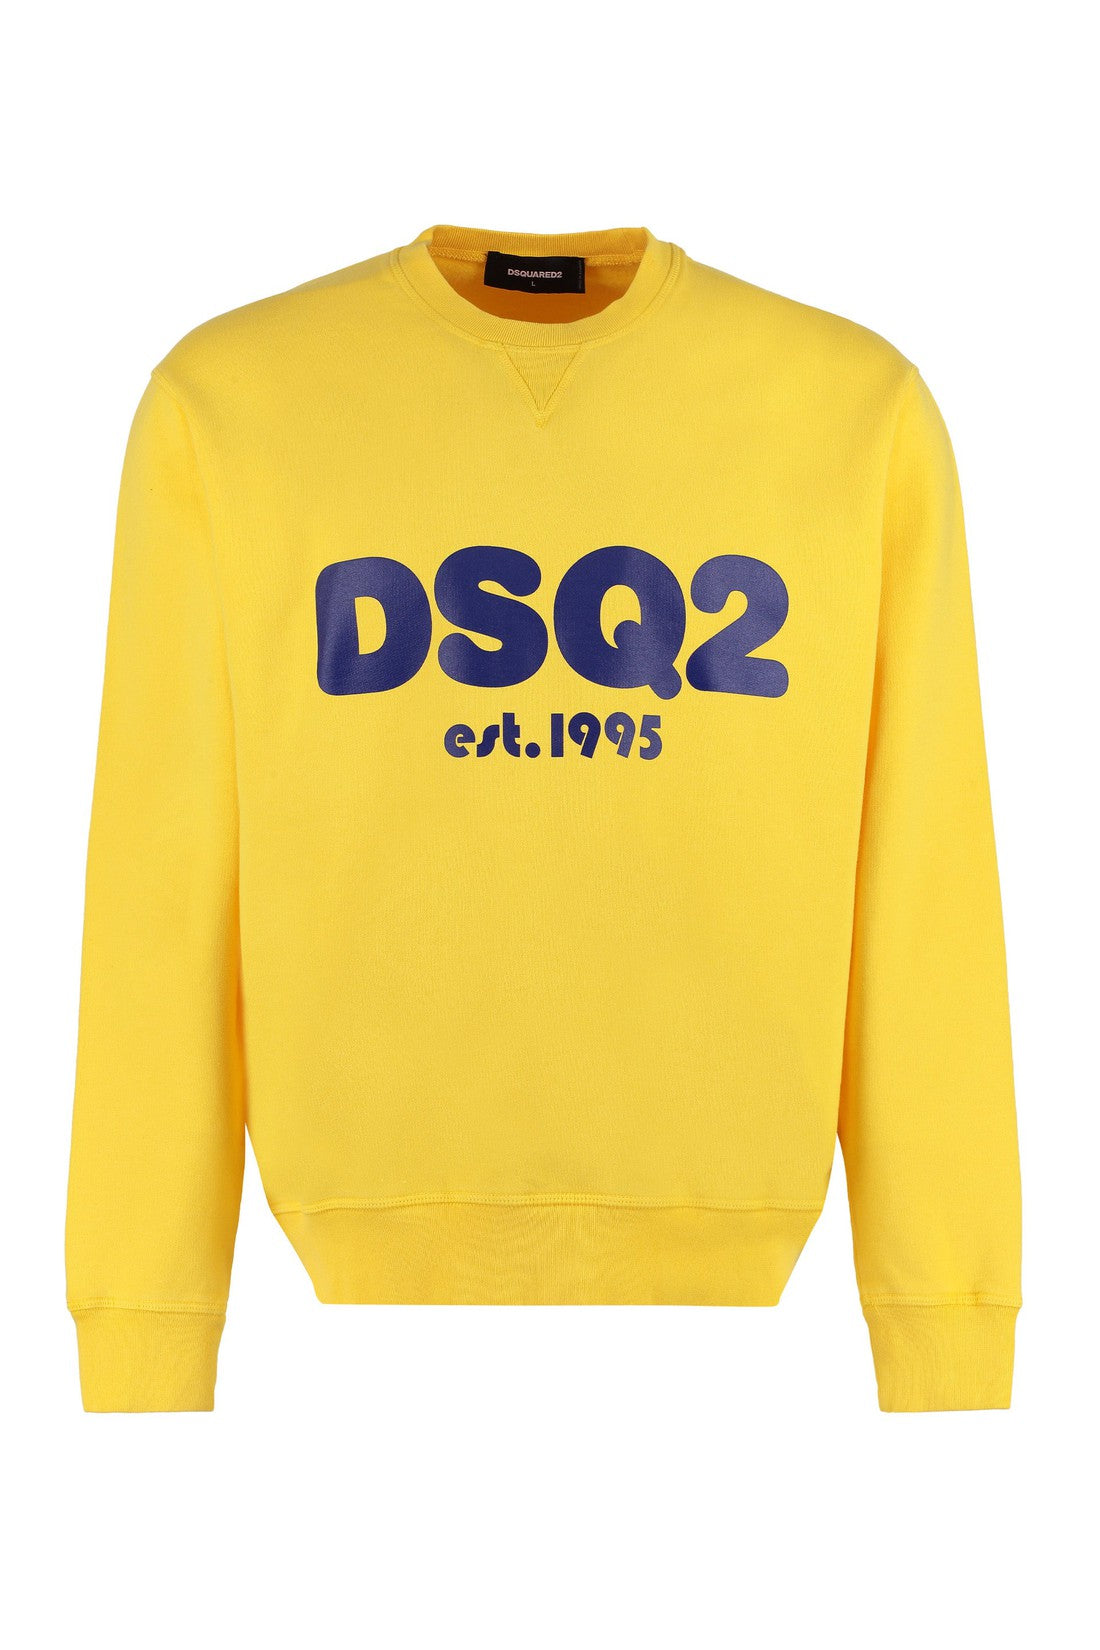 Dsquared2-OUTLET-SALE-Cotton crew-neck sweatshirt-ARCHIVIST